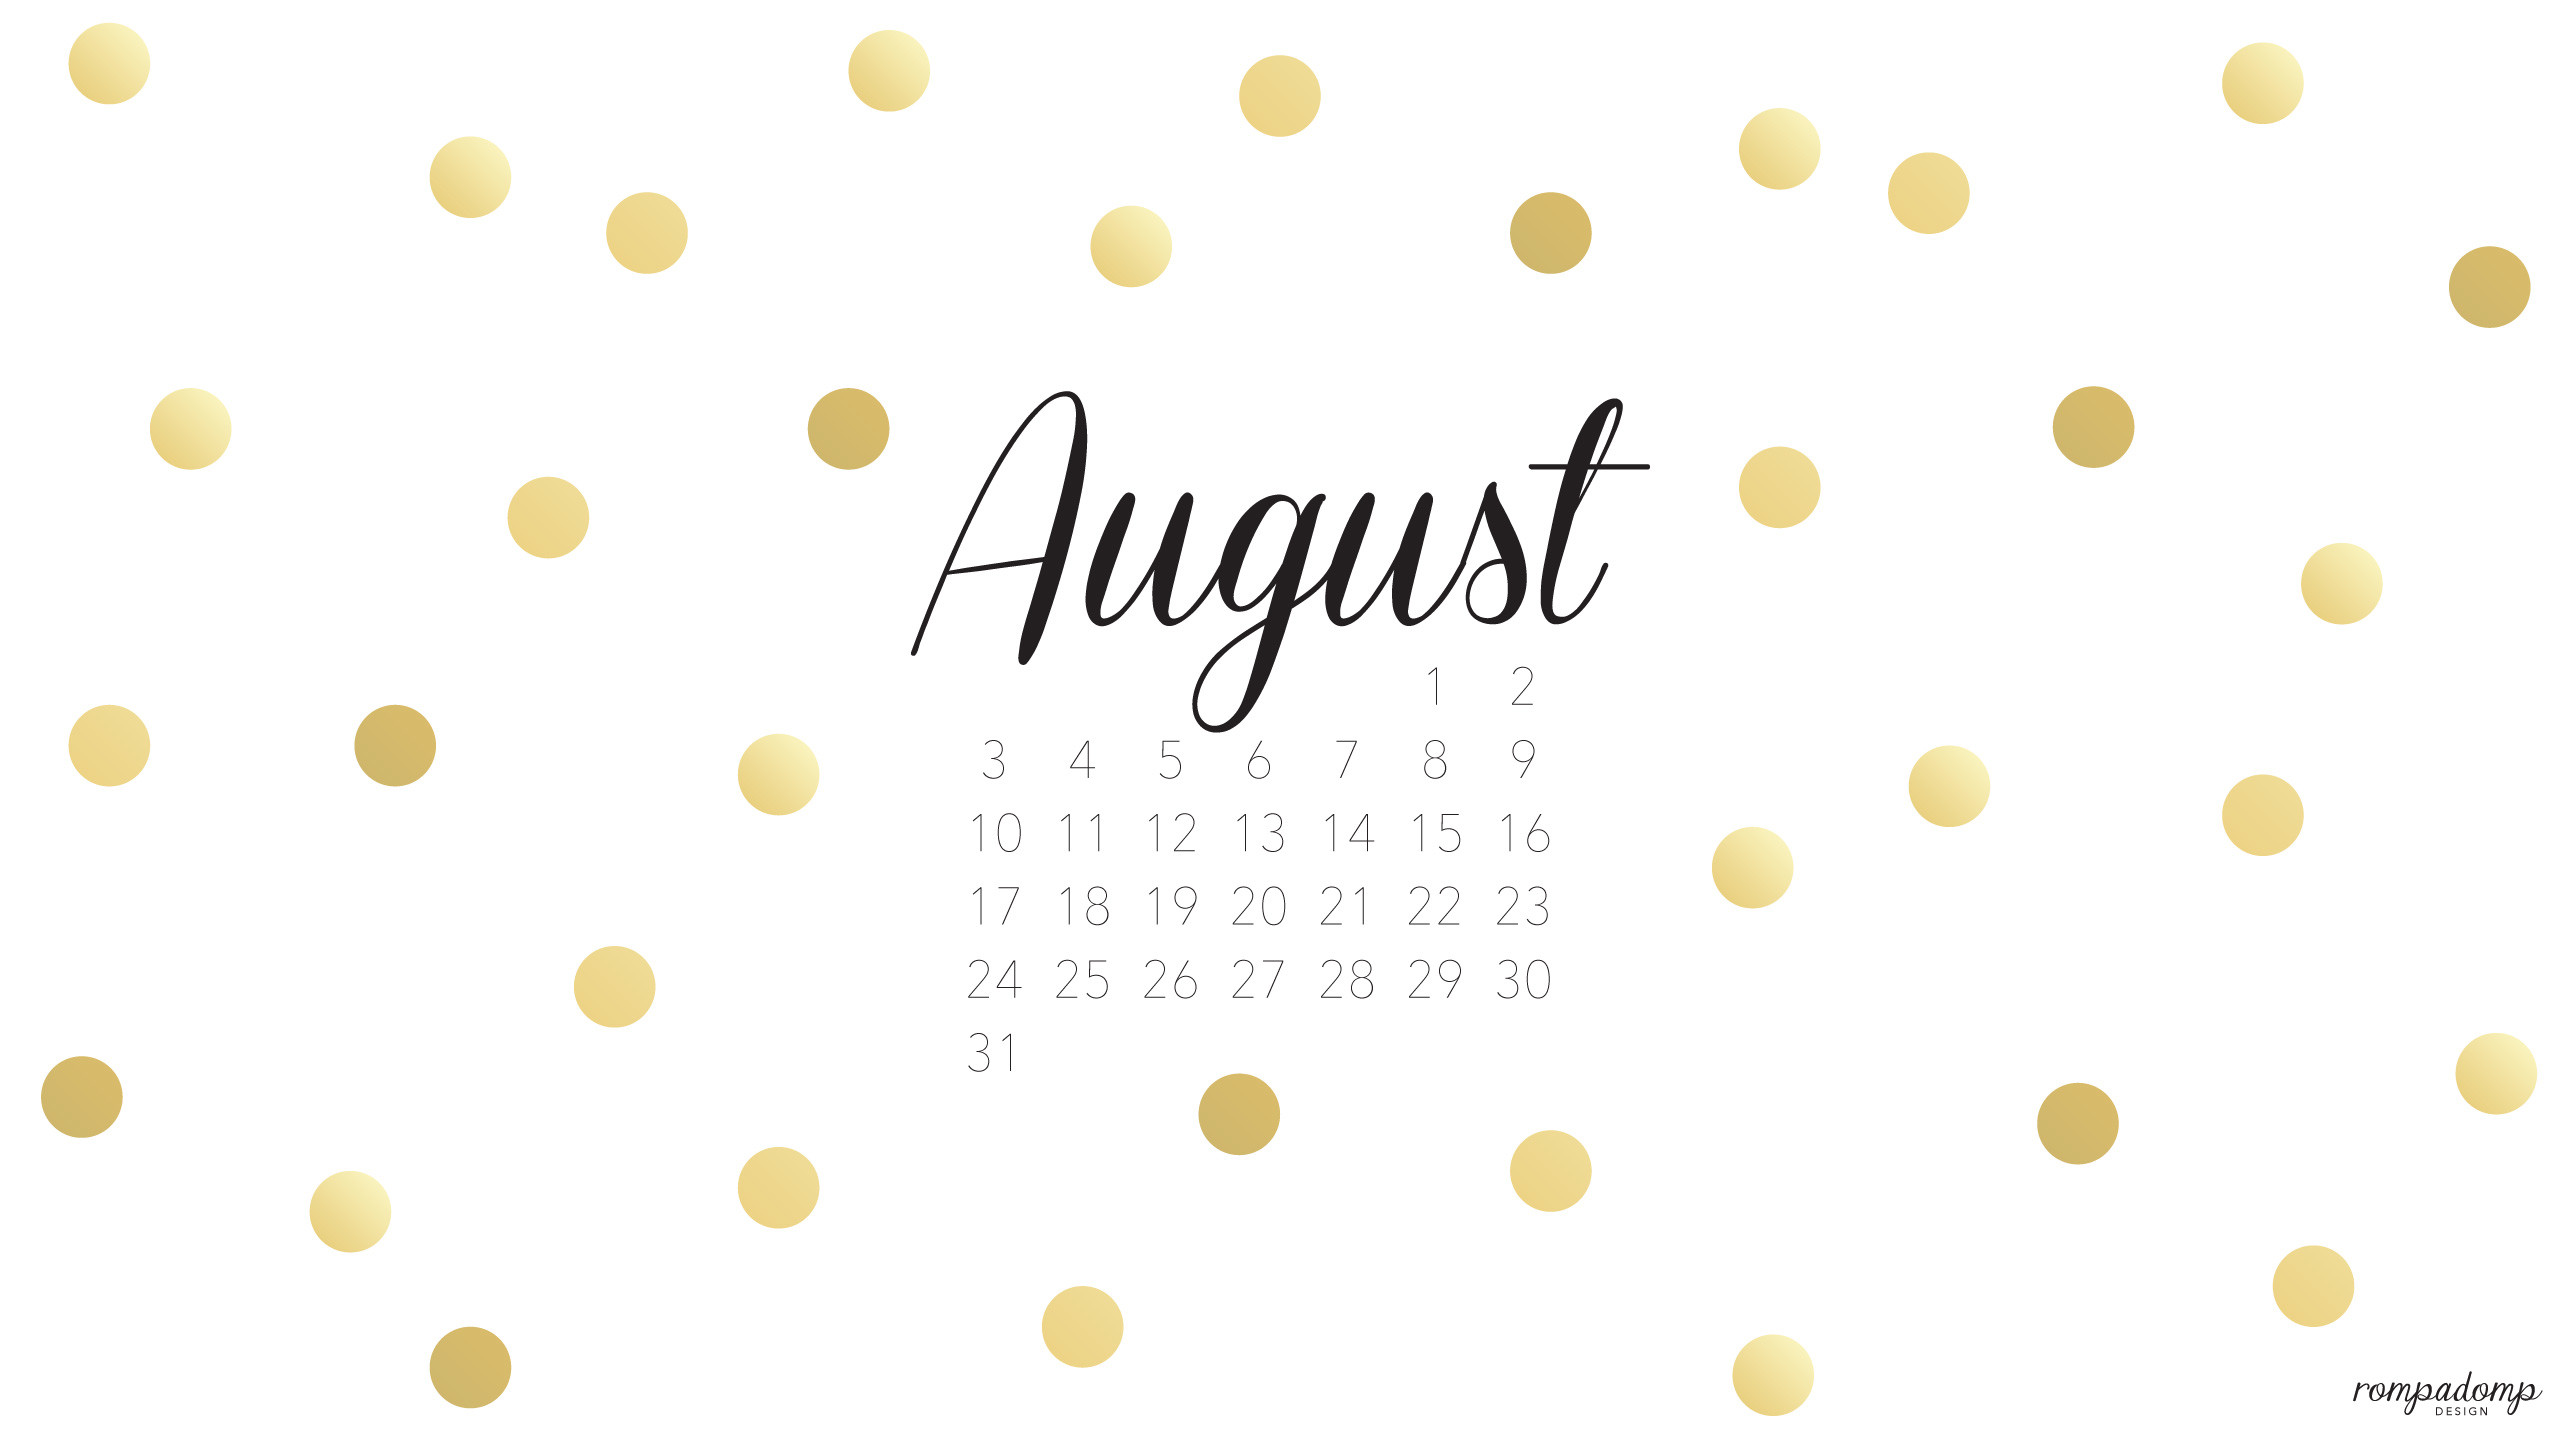 2560x1440 August 2014 Desktop Calendar Wallpaper